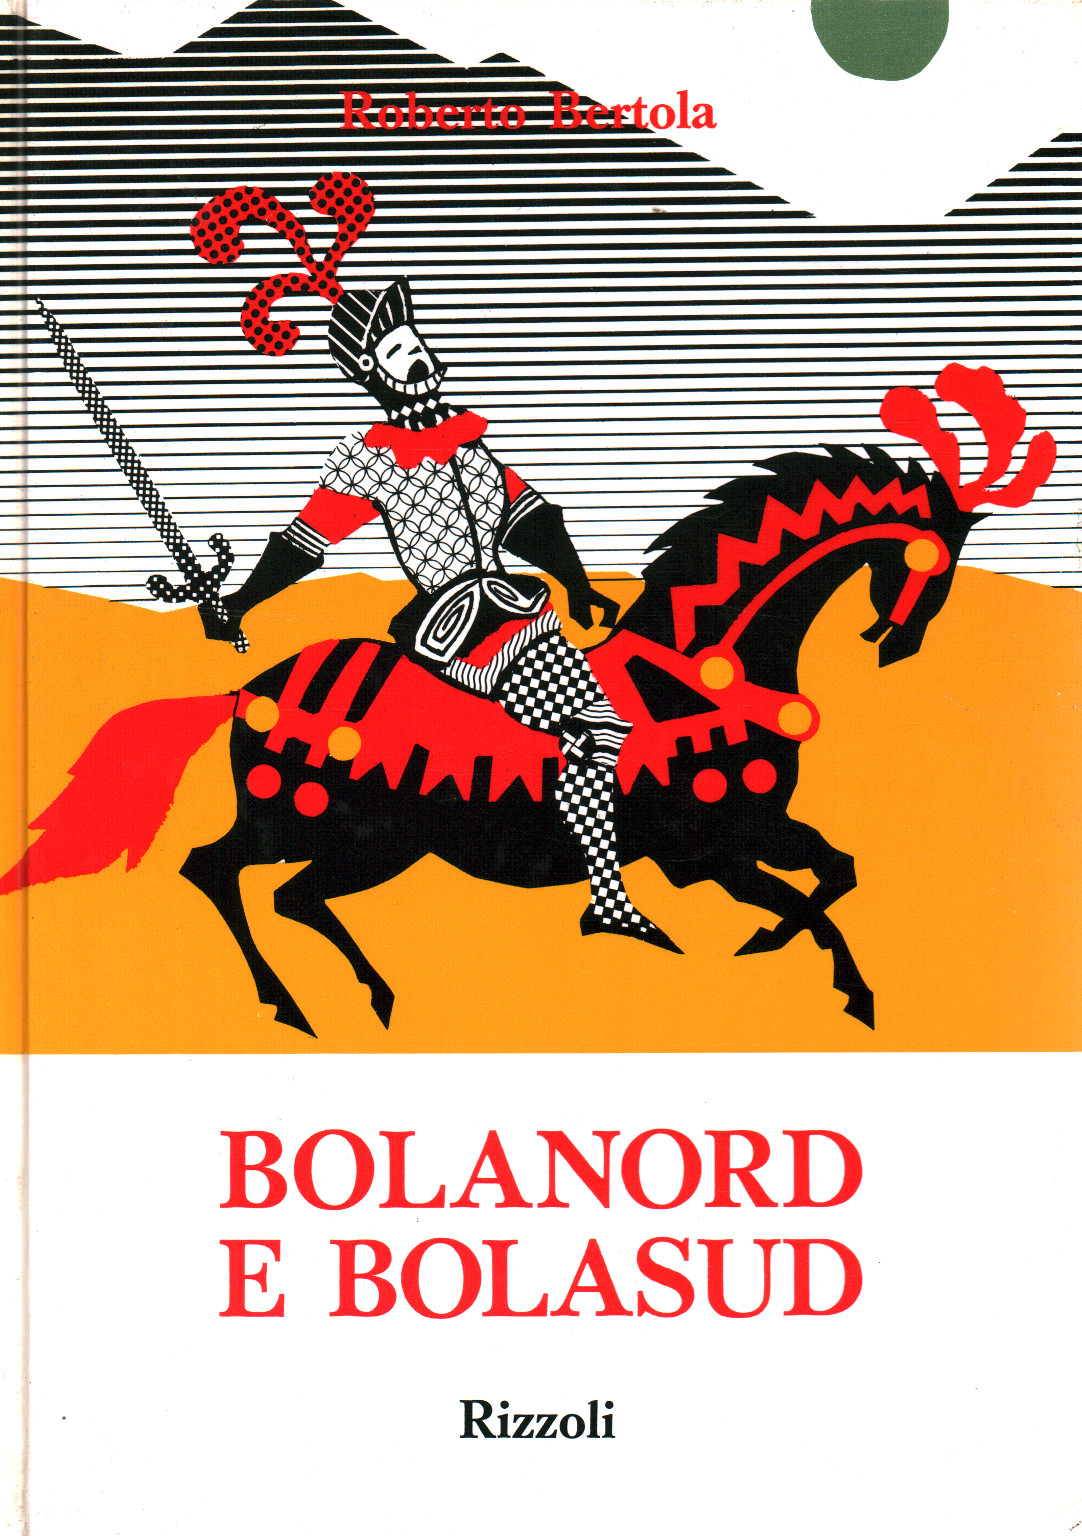 Bolanord y Bolasud, s.una.